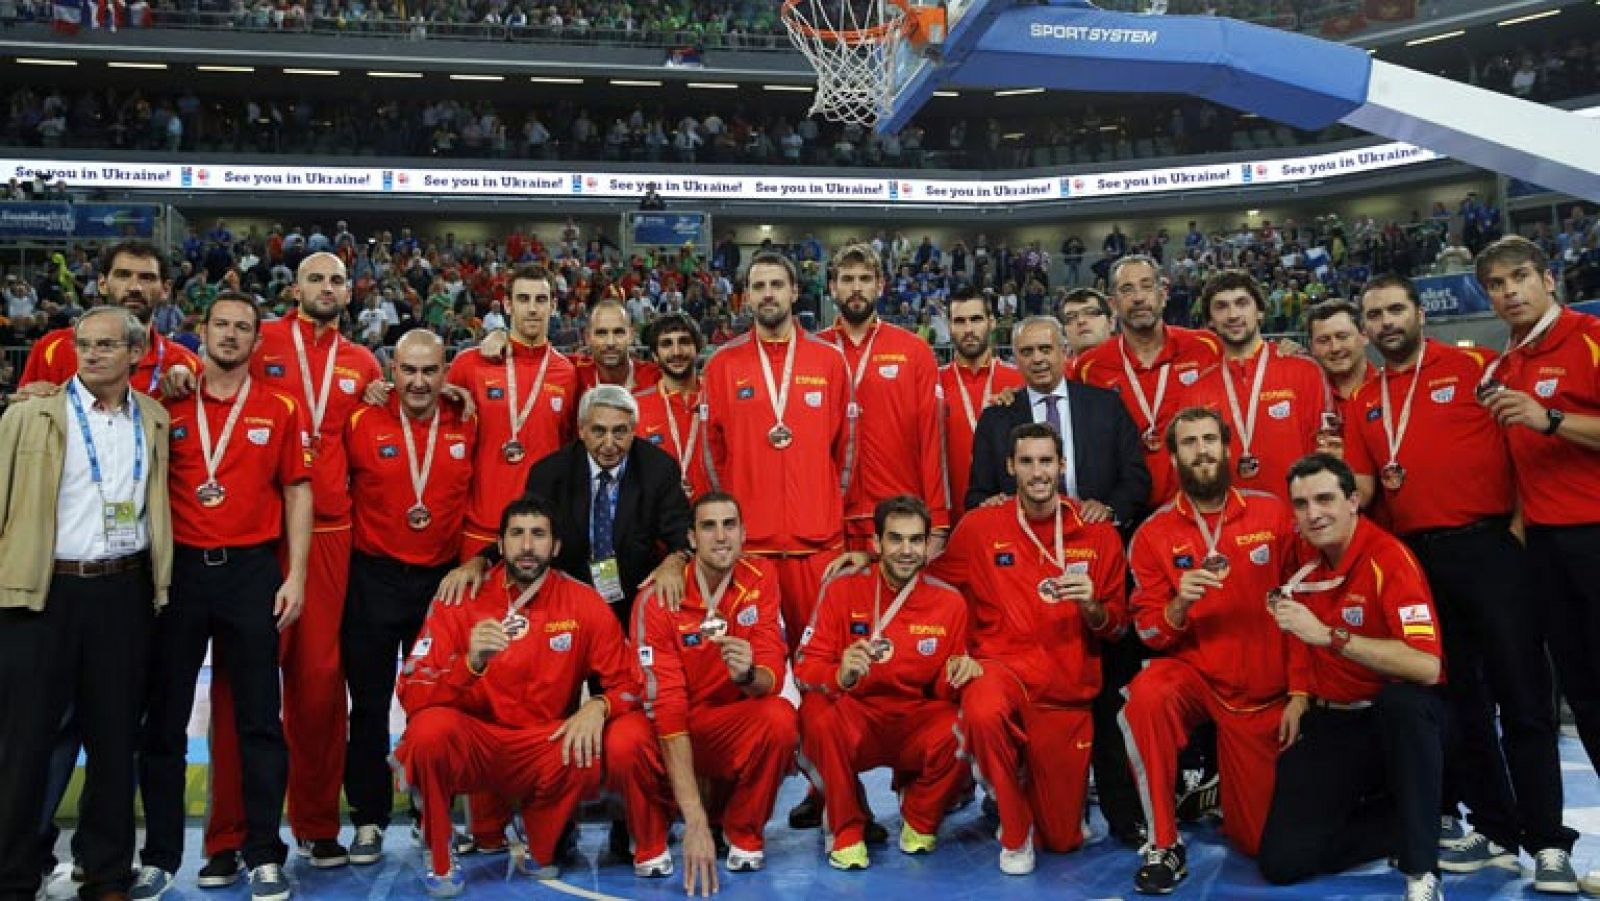 La selección española de baloncesto se ha colgado el bronce en este Eurobasket de Eslovenia 2013 tras vencer con comodidad a Croacia en la final de consolación por 92-66. Sergio Llull, con 21 puntos, y Victor Claver, con 16, han sido los mejores jugadores de España.

Mención especial merece también Marc Gasol, el mejor pivot del Eurobasket ha terminado el partido con 17 puntos, 8 rebotes y la ovación del público asistente, incluidos los aficionados croatas.